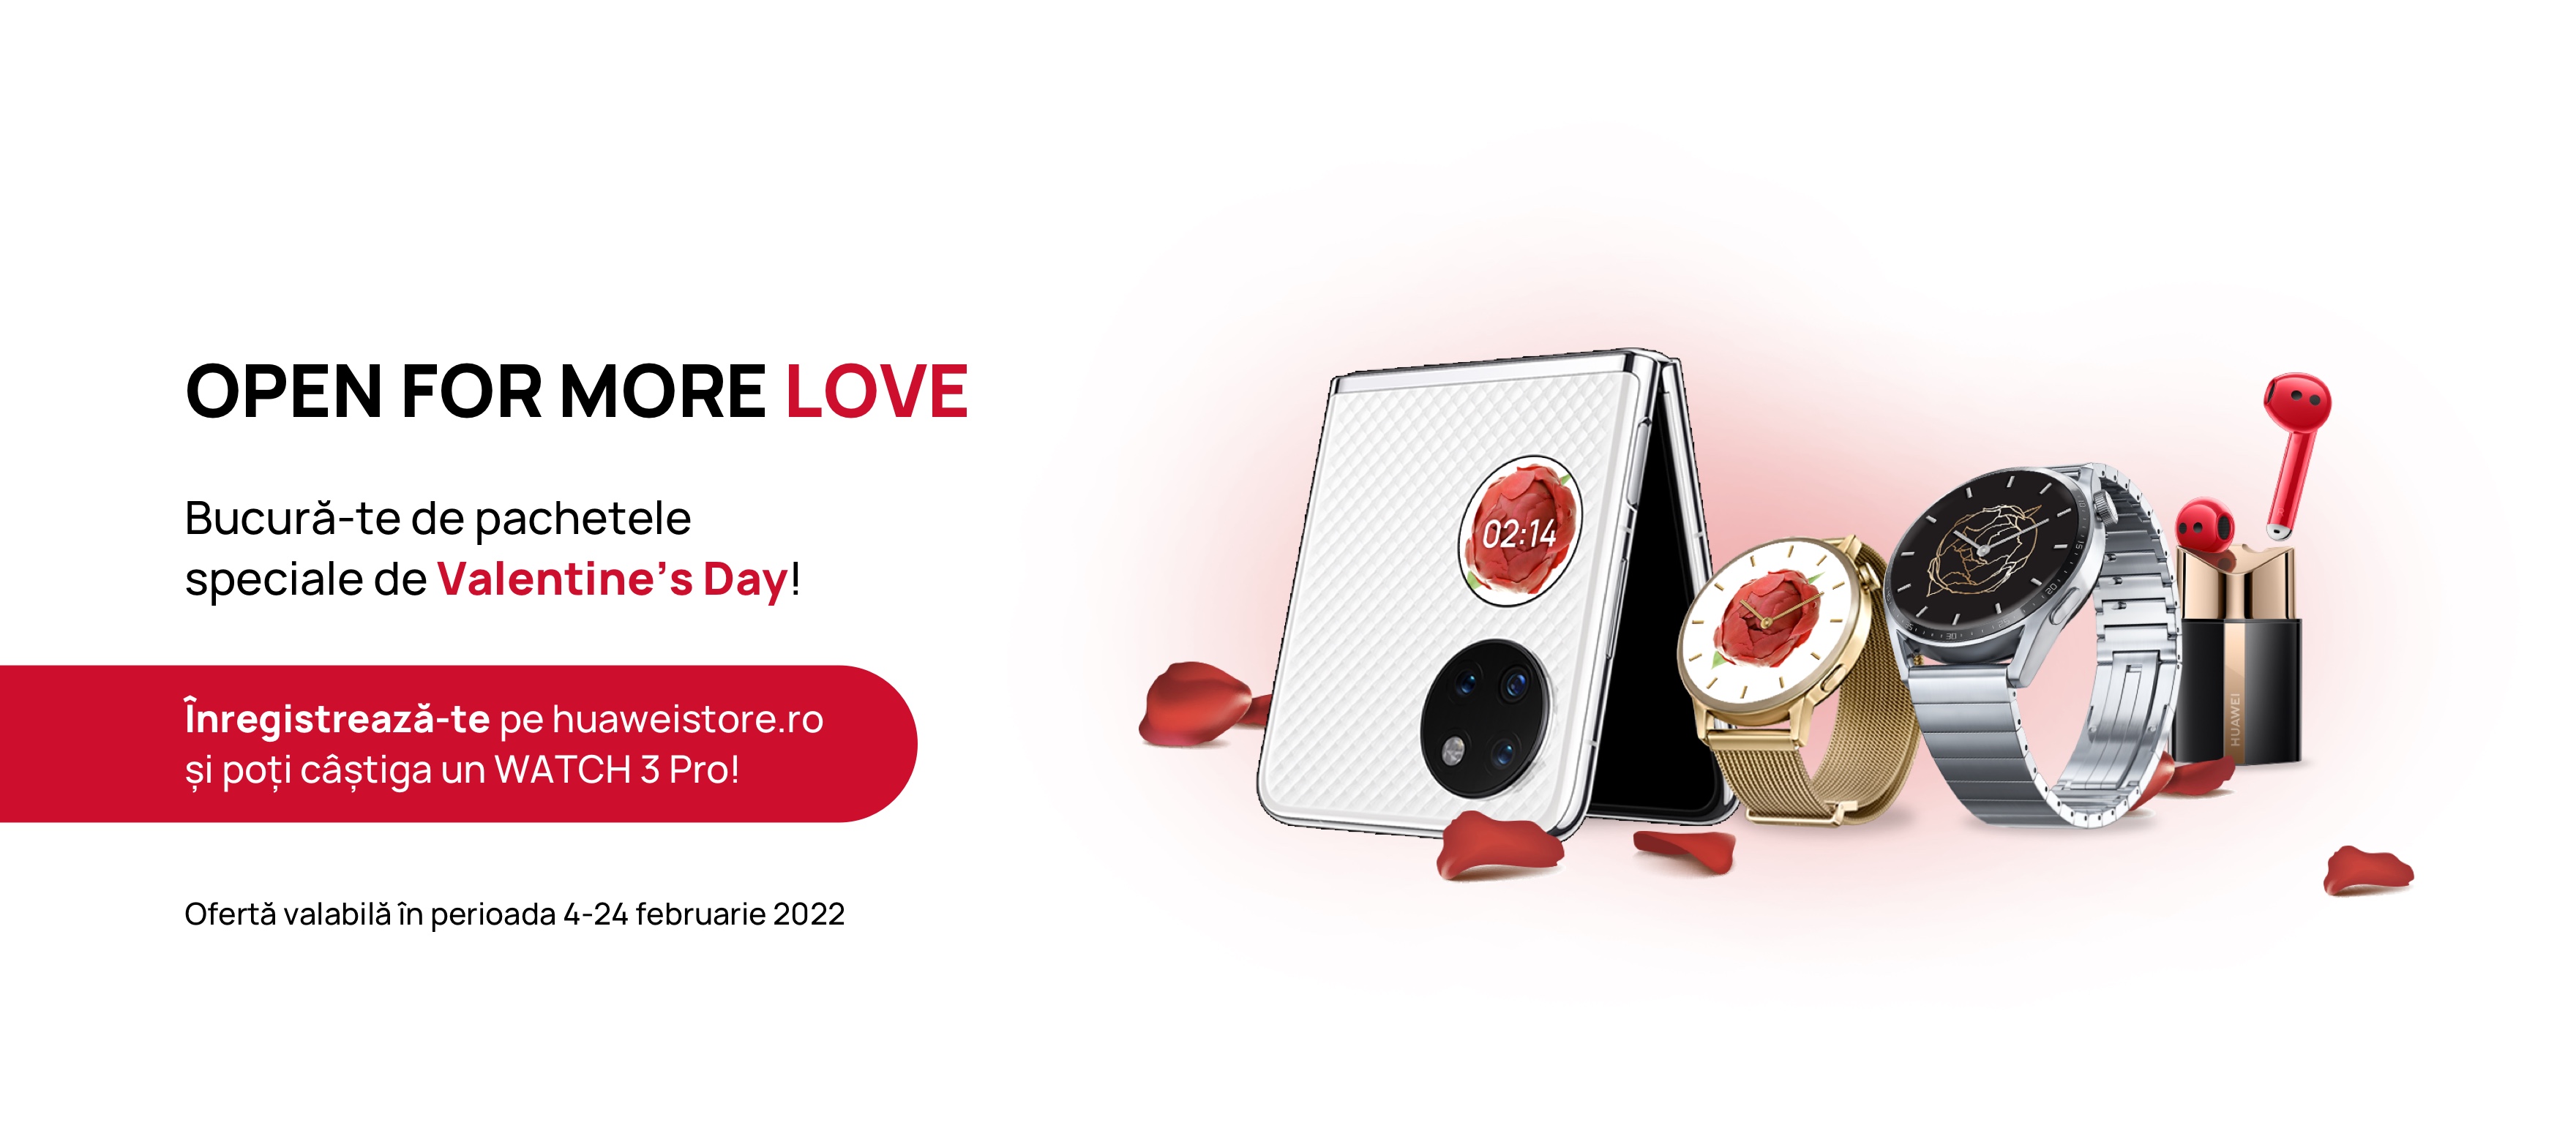 Ofertele Huawei de Valentine’s Day includ toate categoriile de produse